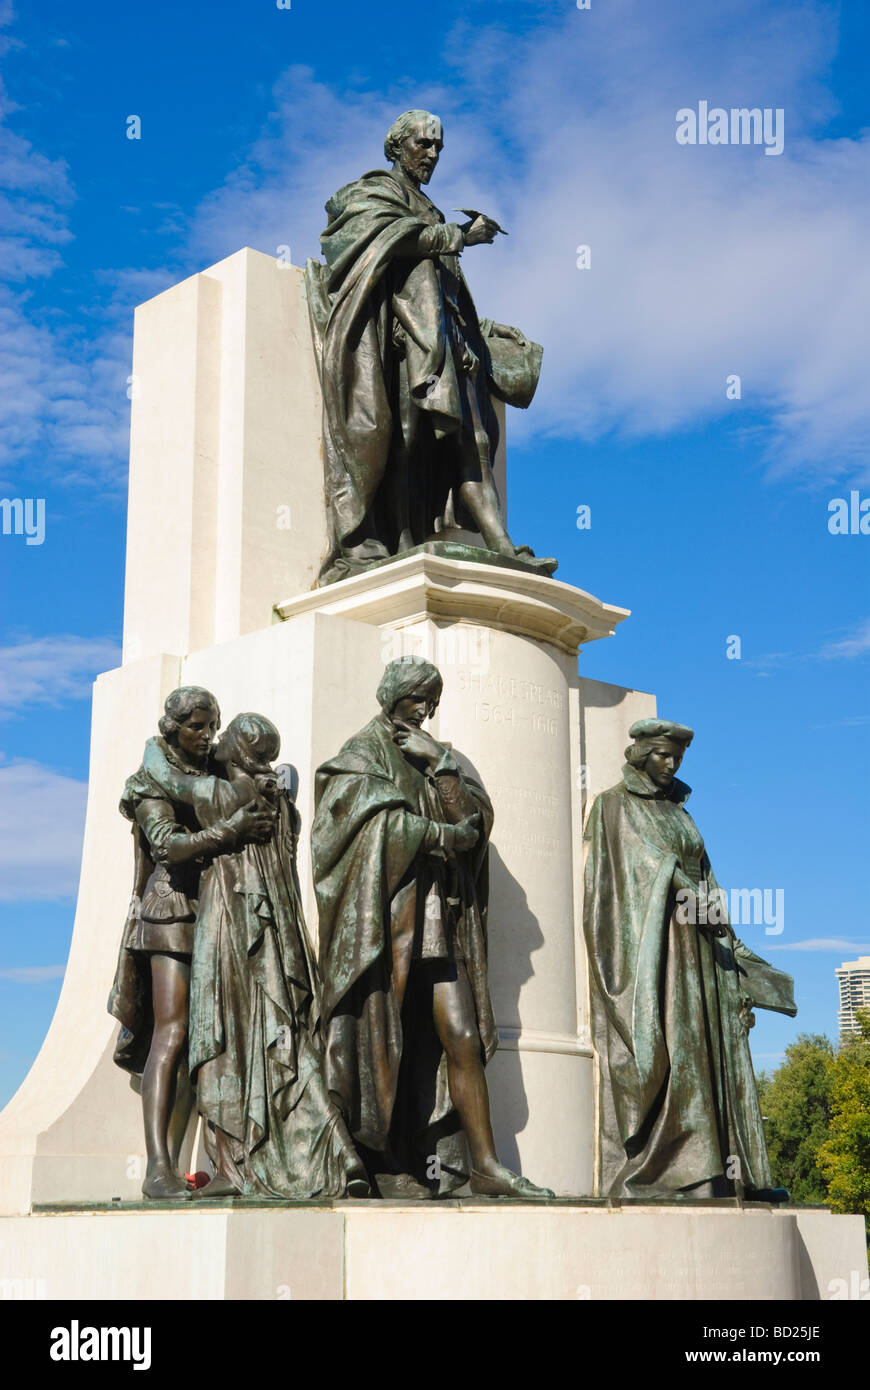 Des statues en bronze en hommage à Shakespeare. Sydney, Australie. Banque D'Images